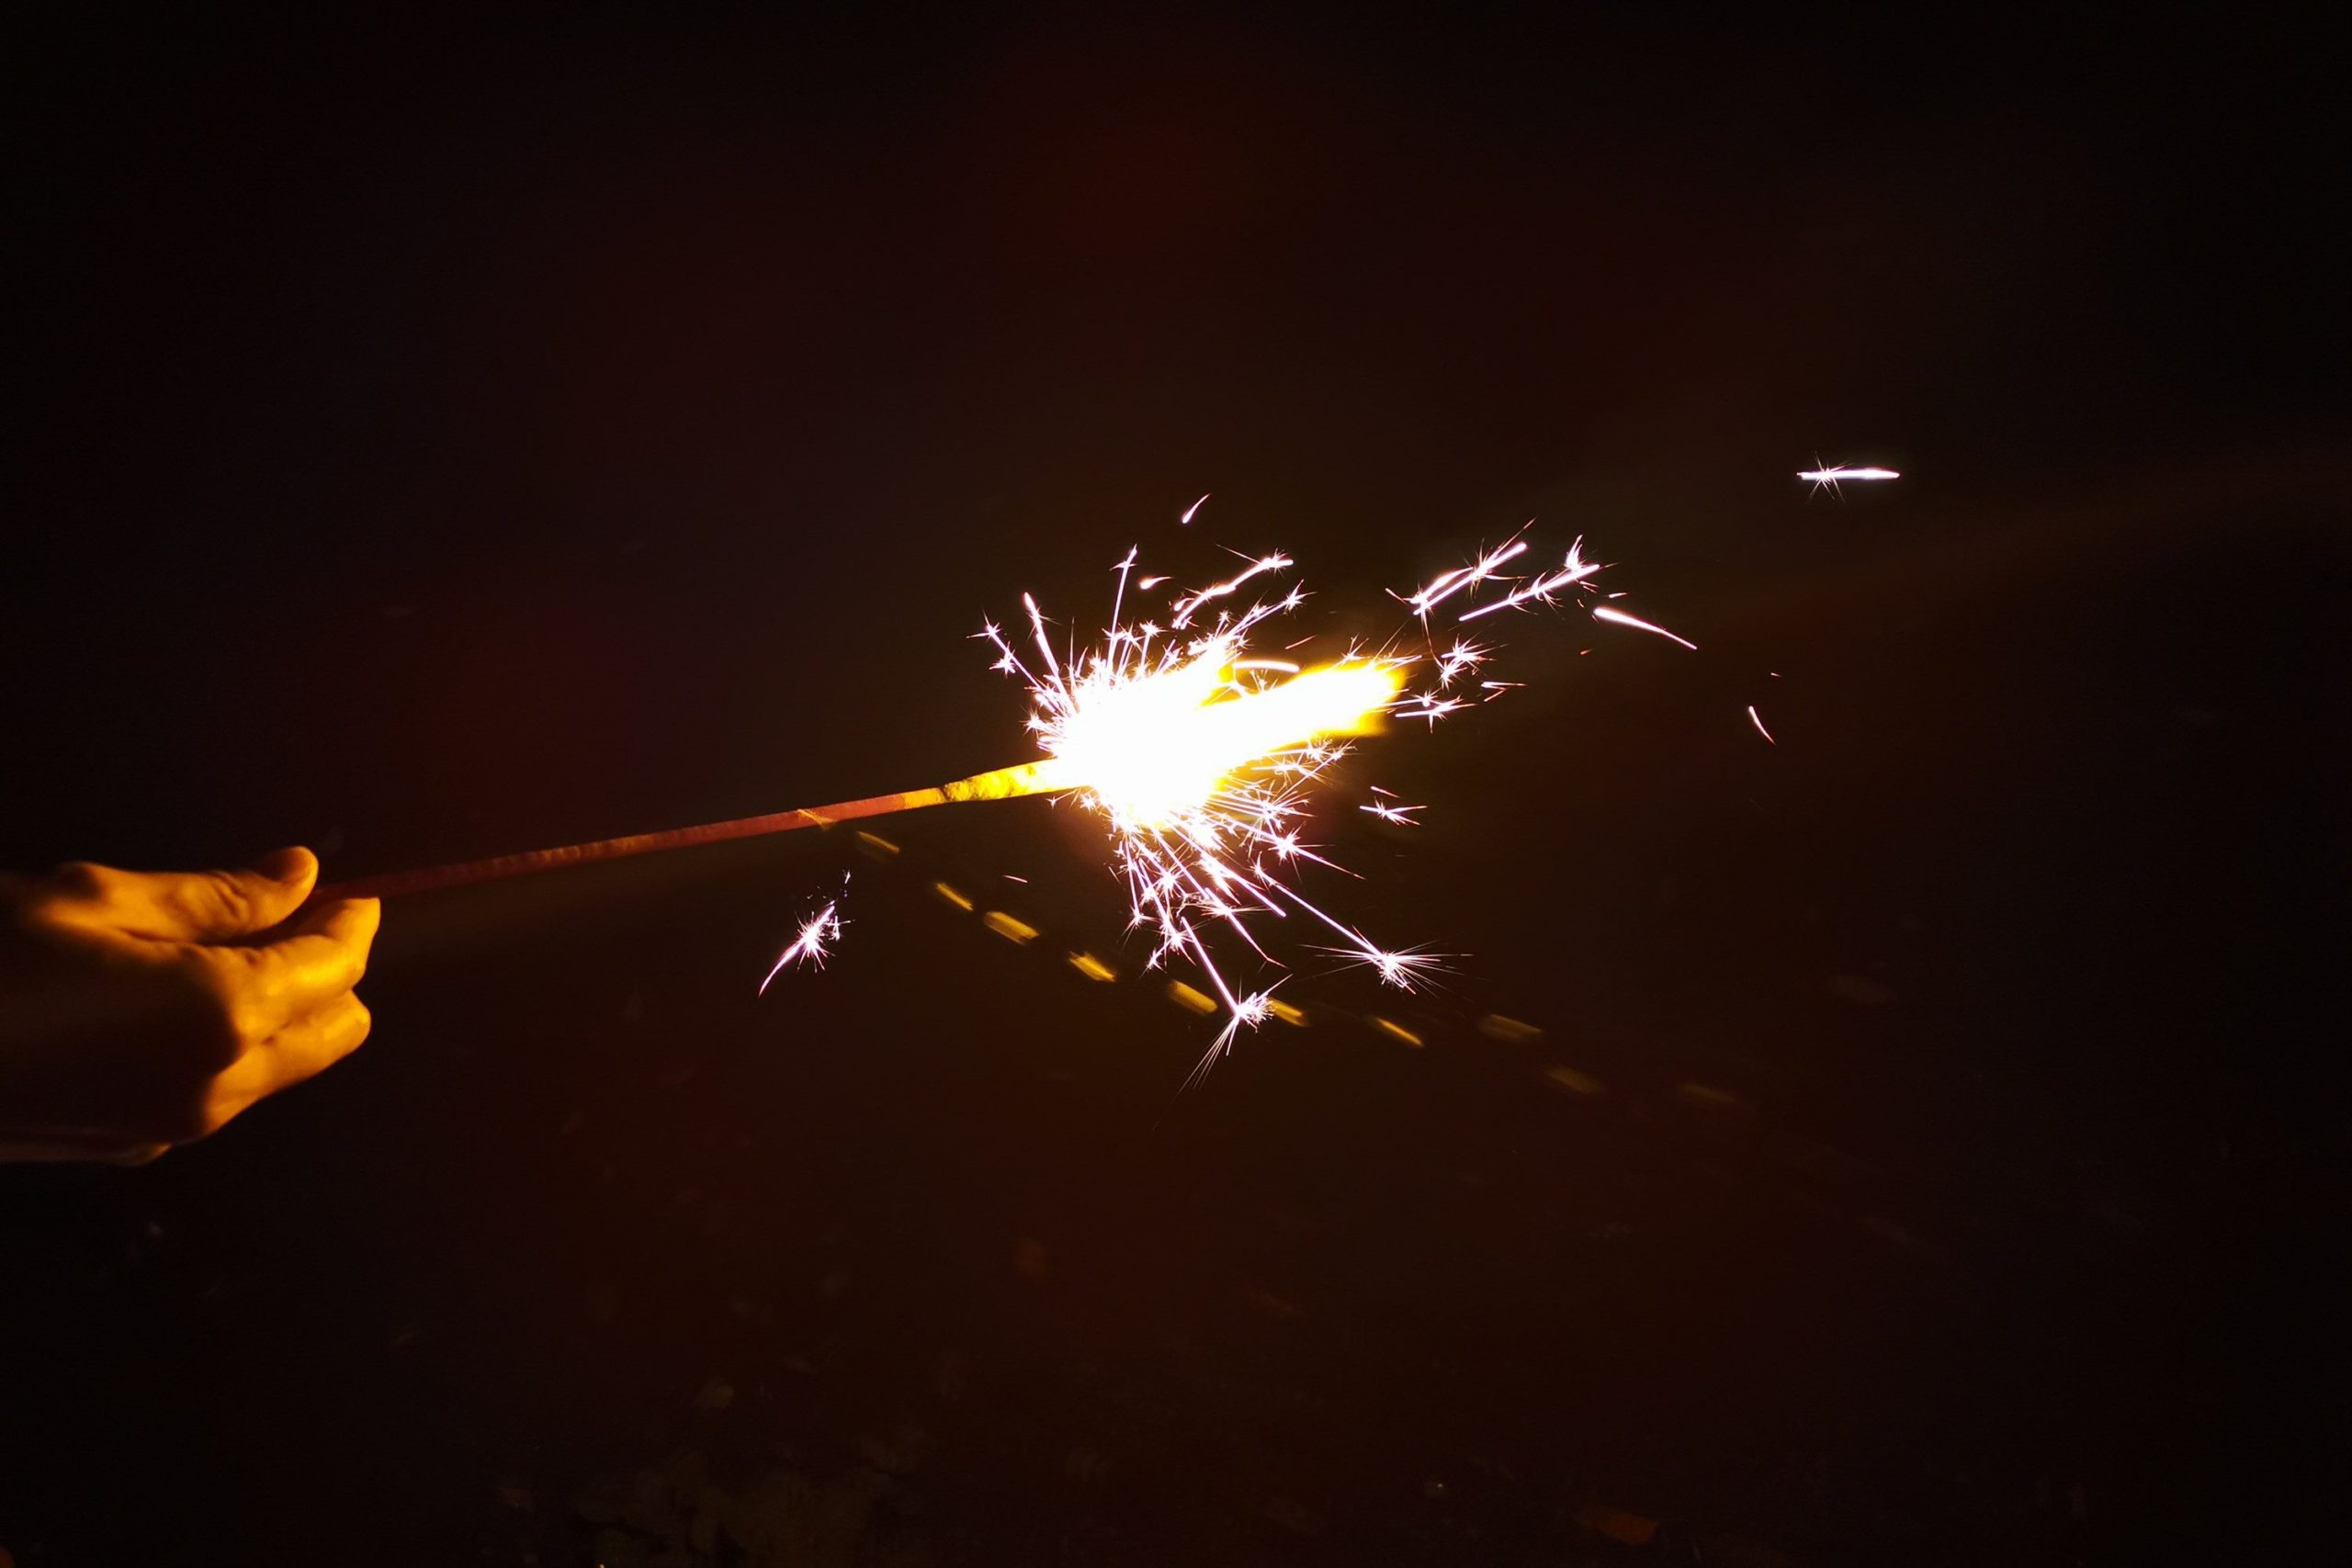 ダイソー 写真がキレイに撮れる花火 が最高 インスタ映え以外にもメリット発見 Sirabee07hanabi001